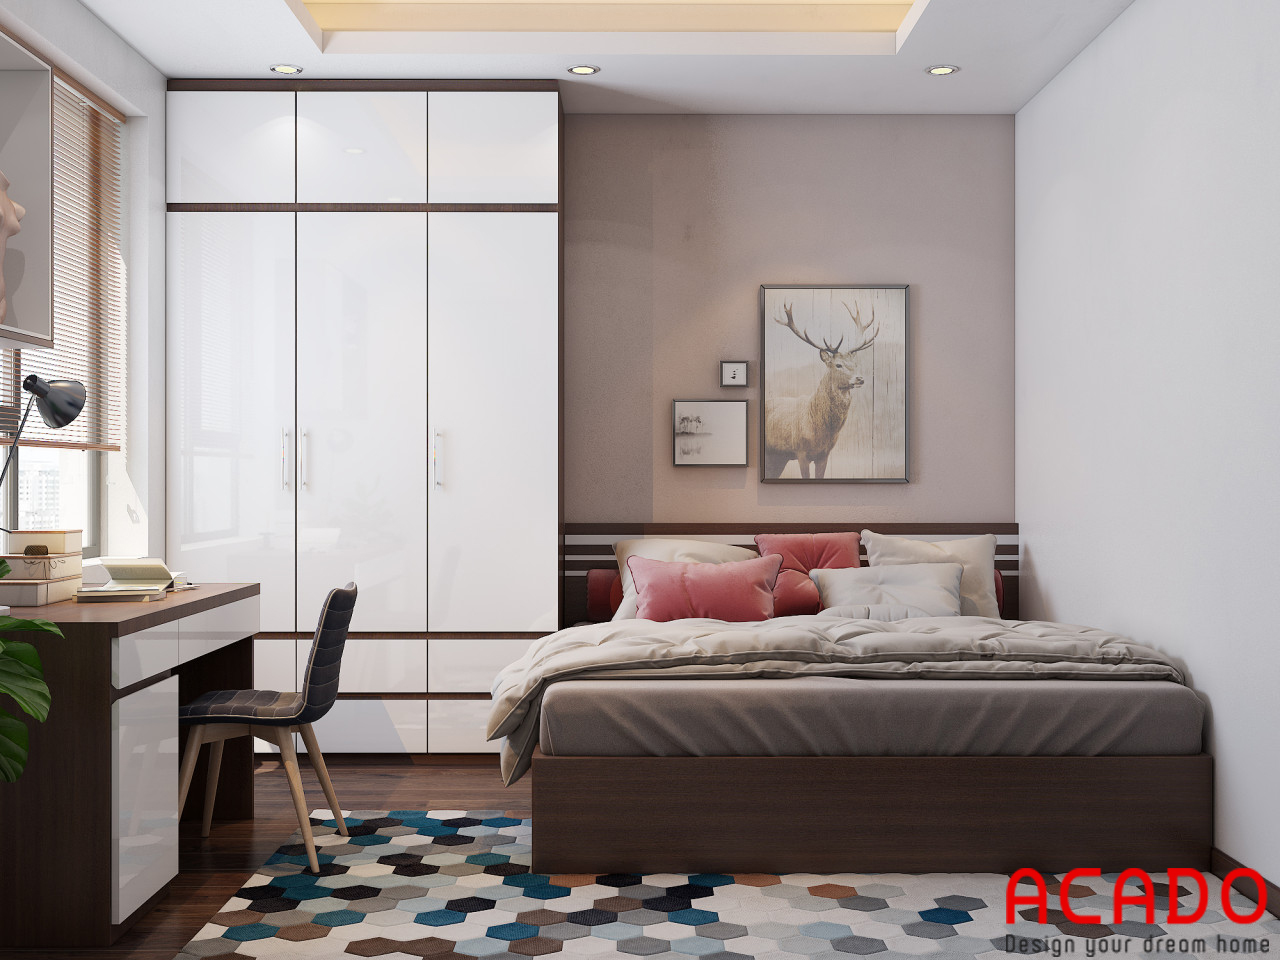 Với màu trắng kết hợp màu vân gỗ tạo điểm nhấn, phòng ngủ mang phong cách hiện đại